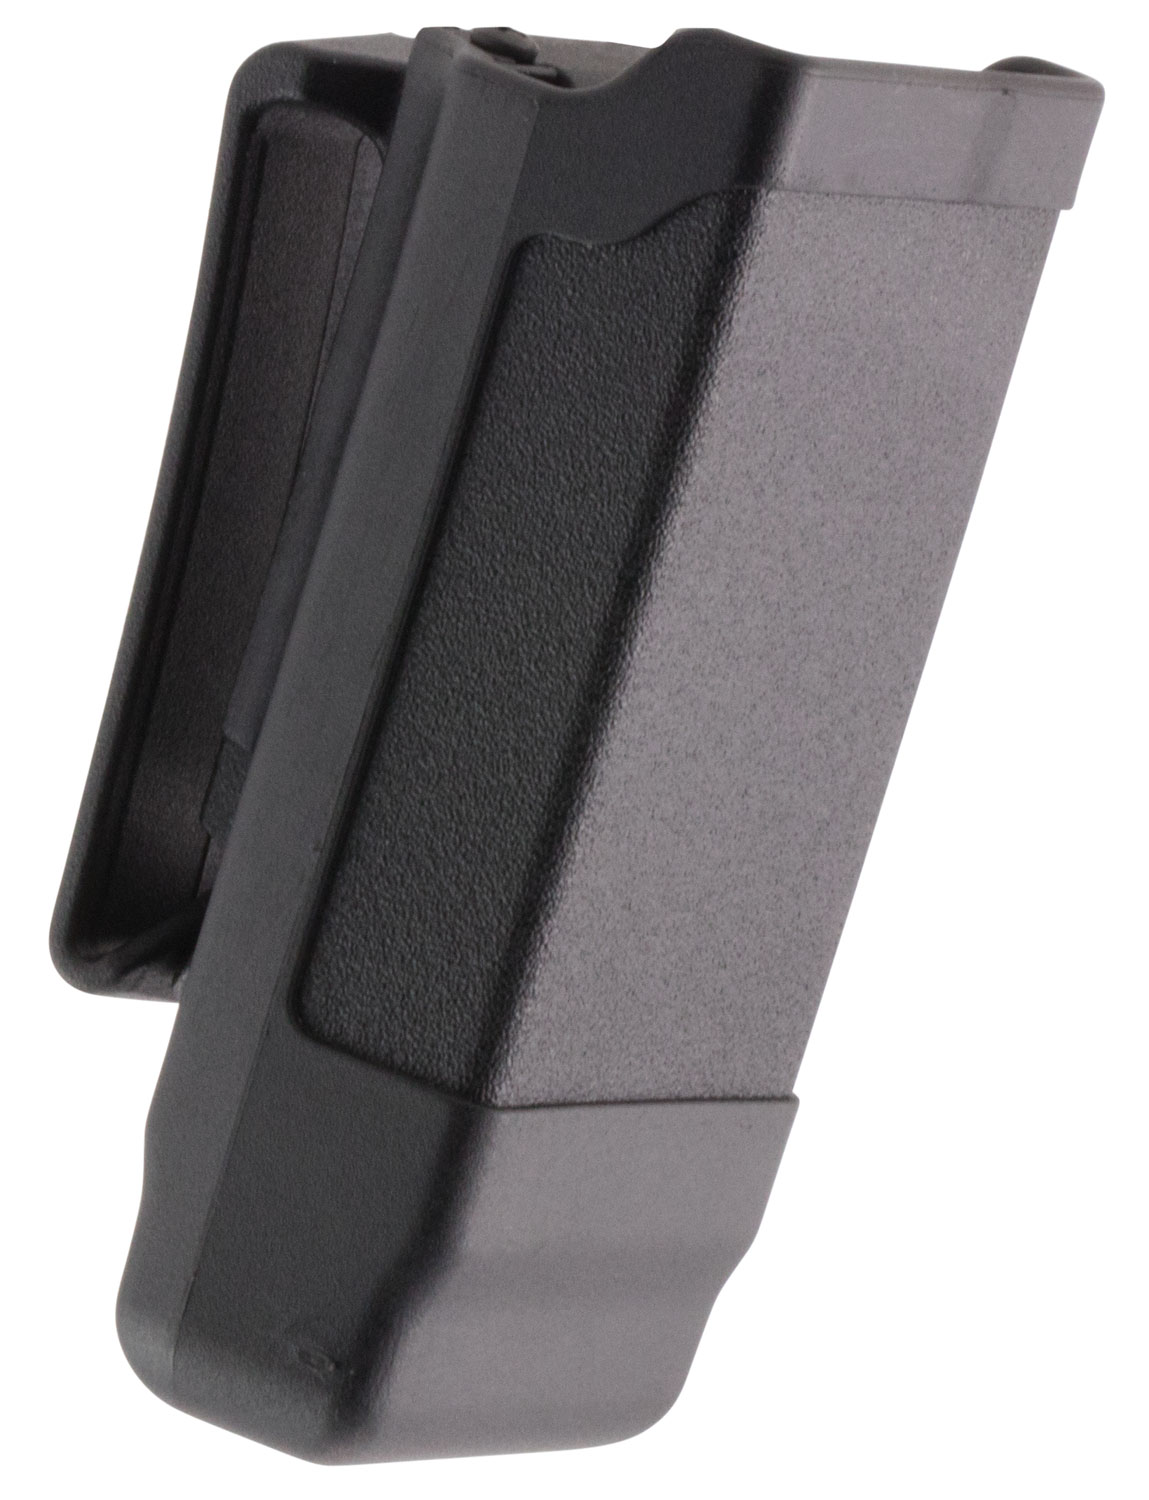 Blackhawk 410500PBK Single Mag Case  Matte Black Polymer Belt Clip Compatible w/ Single Stack 9mm/40/45/357